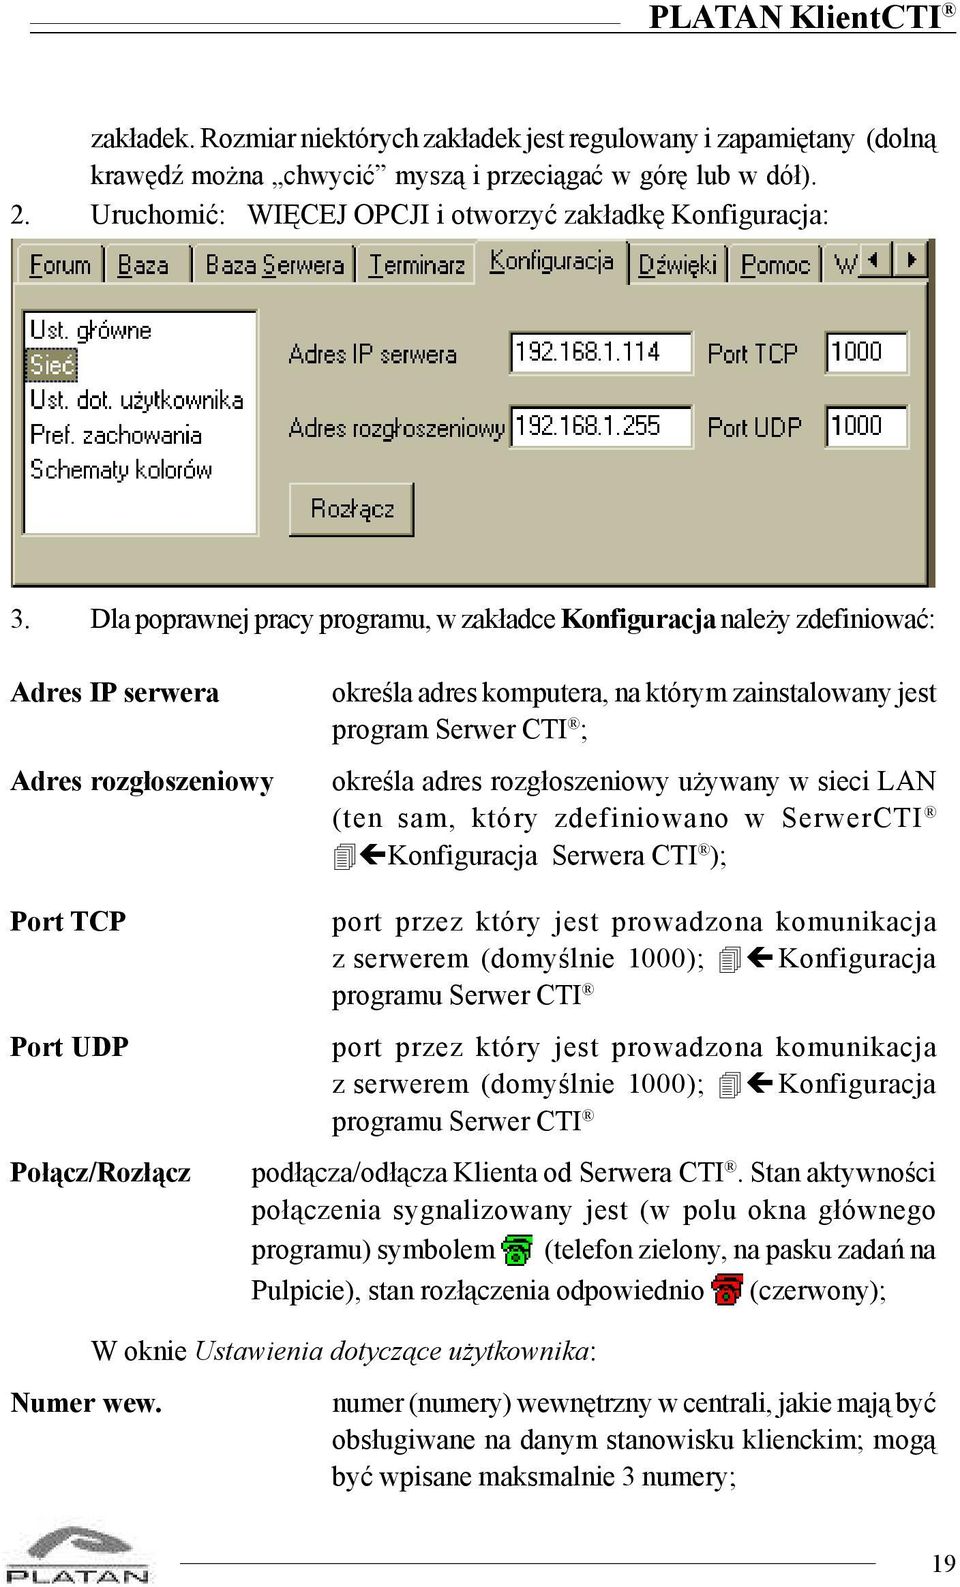 Dla poprawnej pracy programu, w zak³adce Konfiguracja nale y zdefiniowaæ: Adres IP serwera Adres rozg³oszeniowy okreœla adres komputera, na którym zainstalowany jest program Serwer CTI ; okreœla